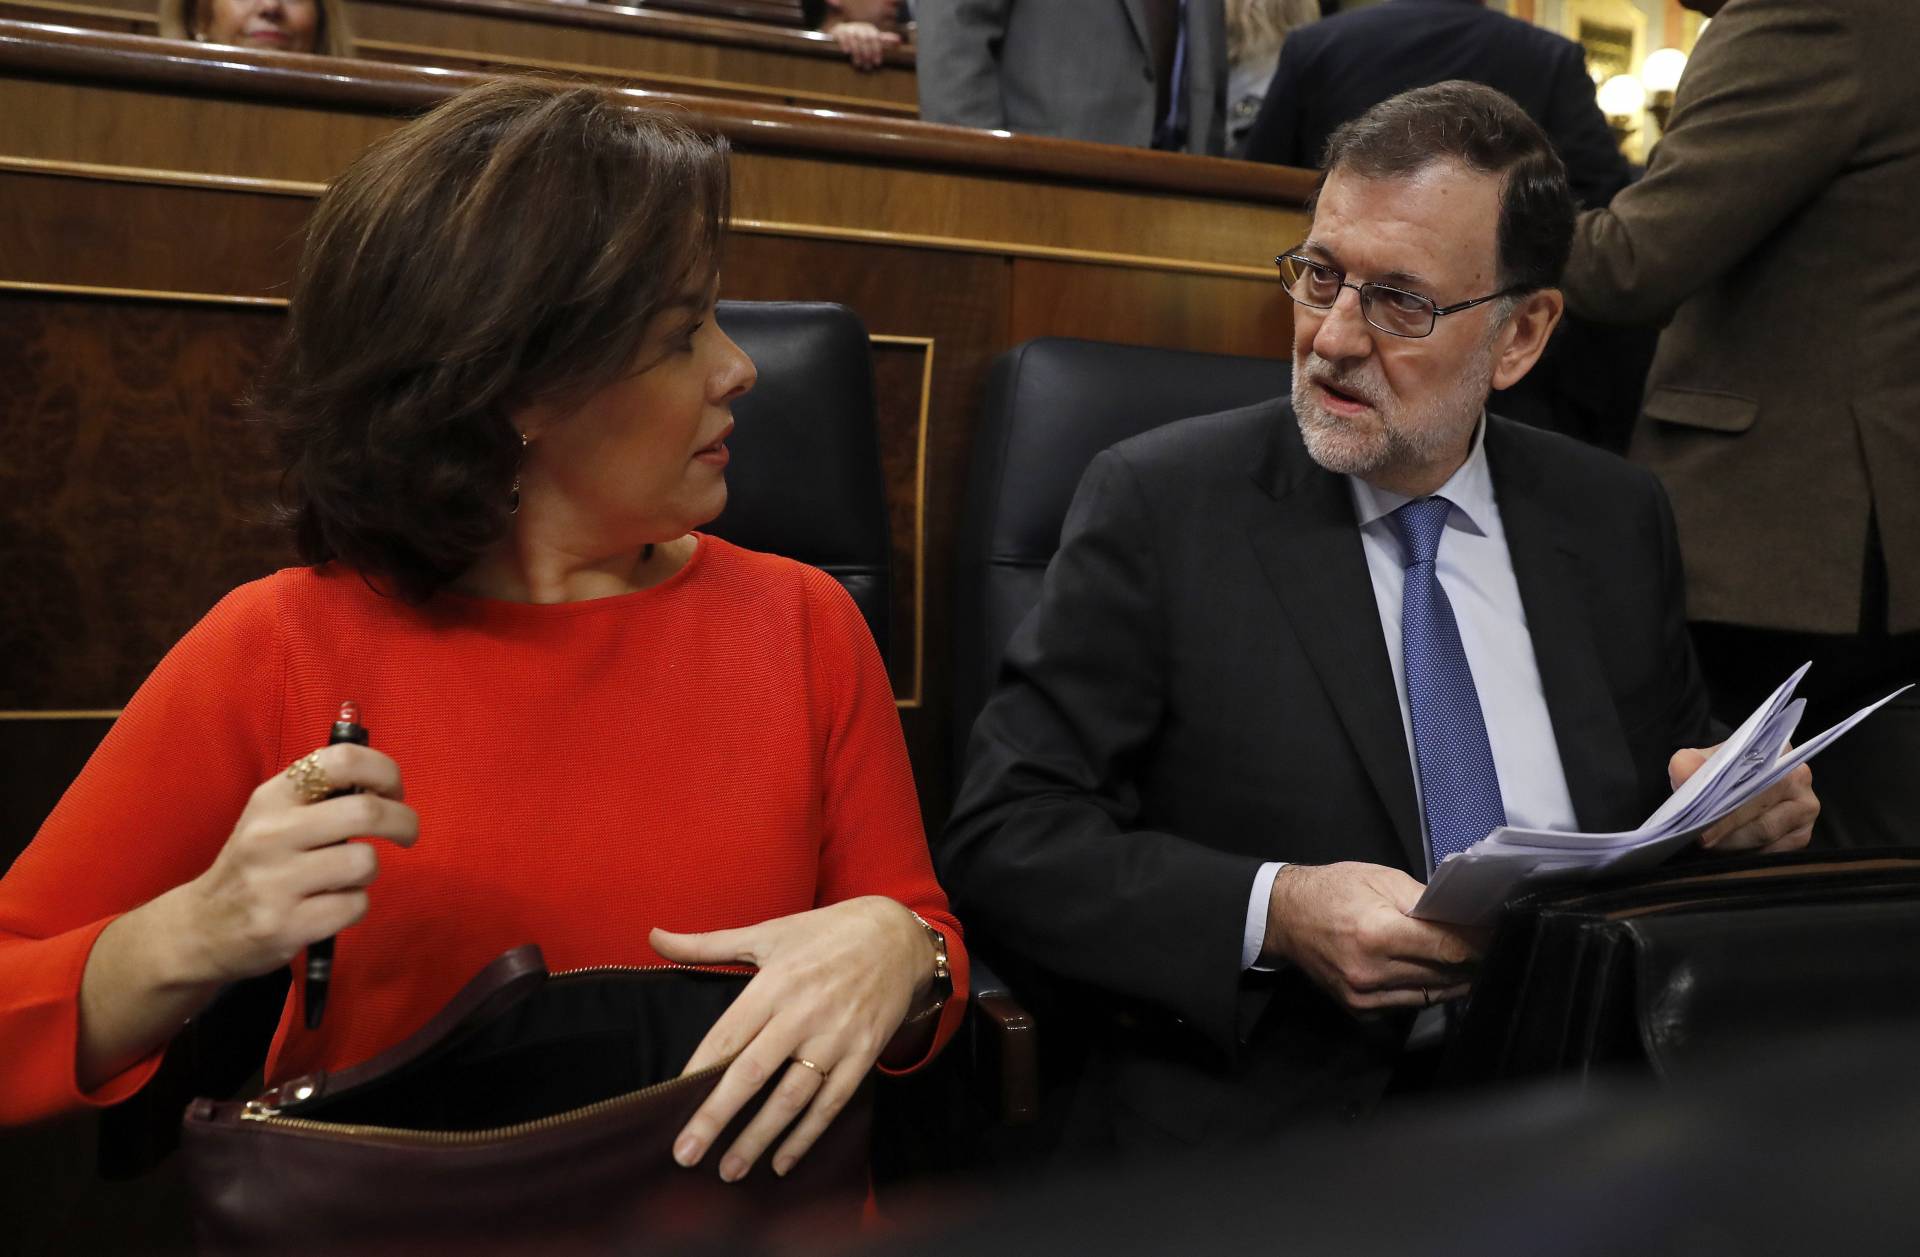 Fiscalía no ve desobediencia de Rajoy y Santamaría por no acudir al Parlament por el 155